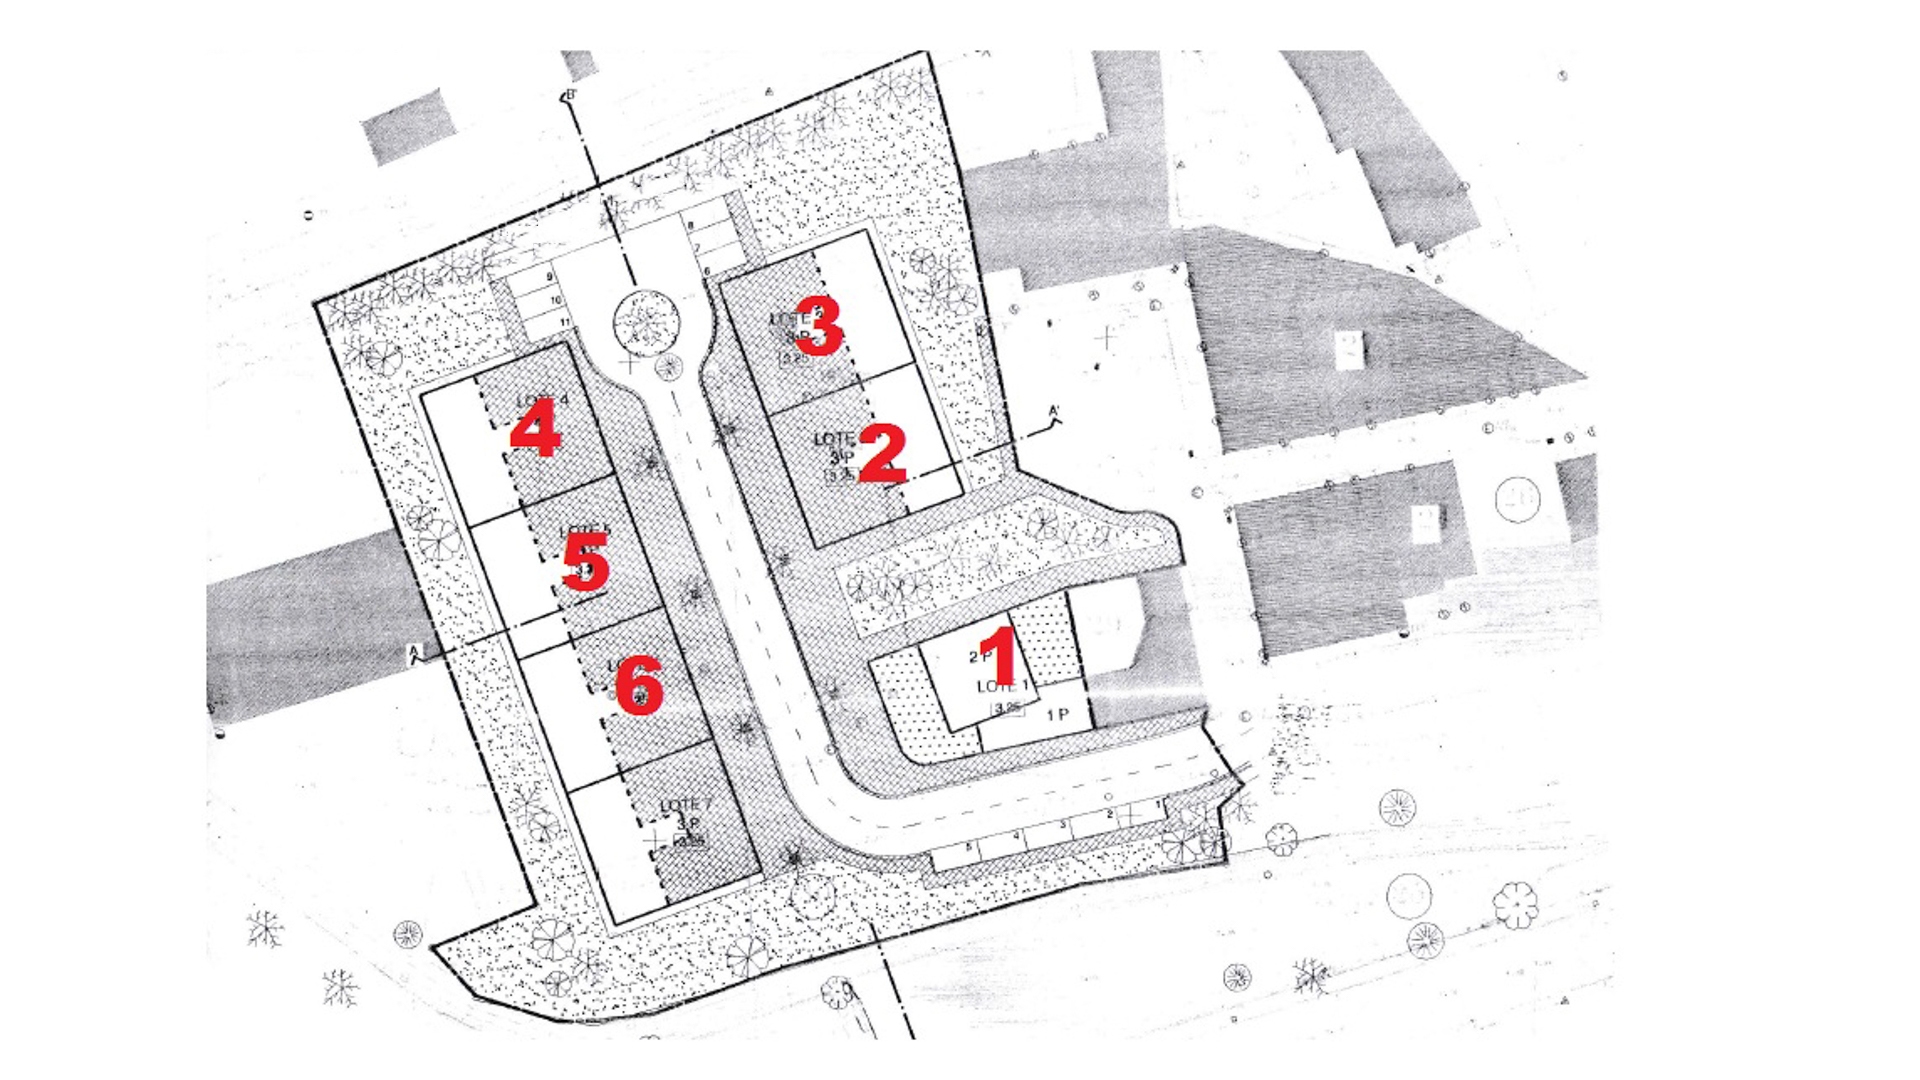 Projeto de Desenvolvimento Urbano no Parchal | LG1316 6 lotes vizinhos com capacidade para construir uma moradia unifamiliar de dois andares e 5 blocos de apartamentos com um total de 20 apartamentos individuais T2 e T3.